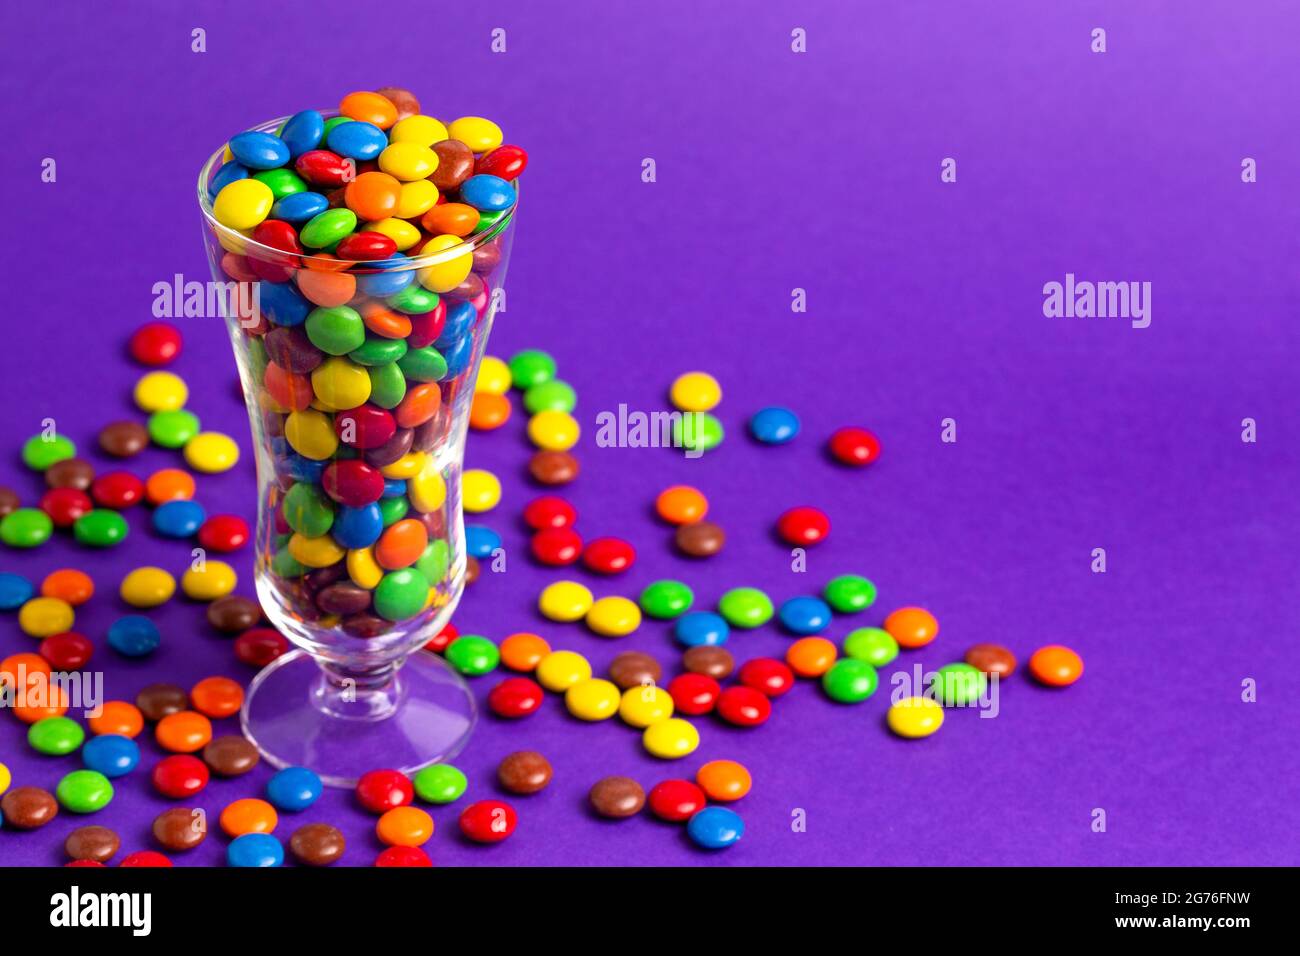 Un verre rempli de boutons de chocolat enrobés de bonbons de couleur arc-en-ciel Banque D'Images